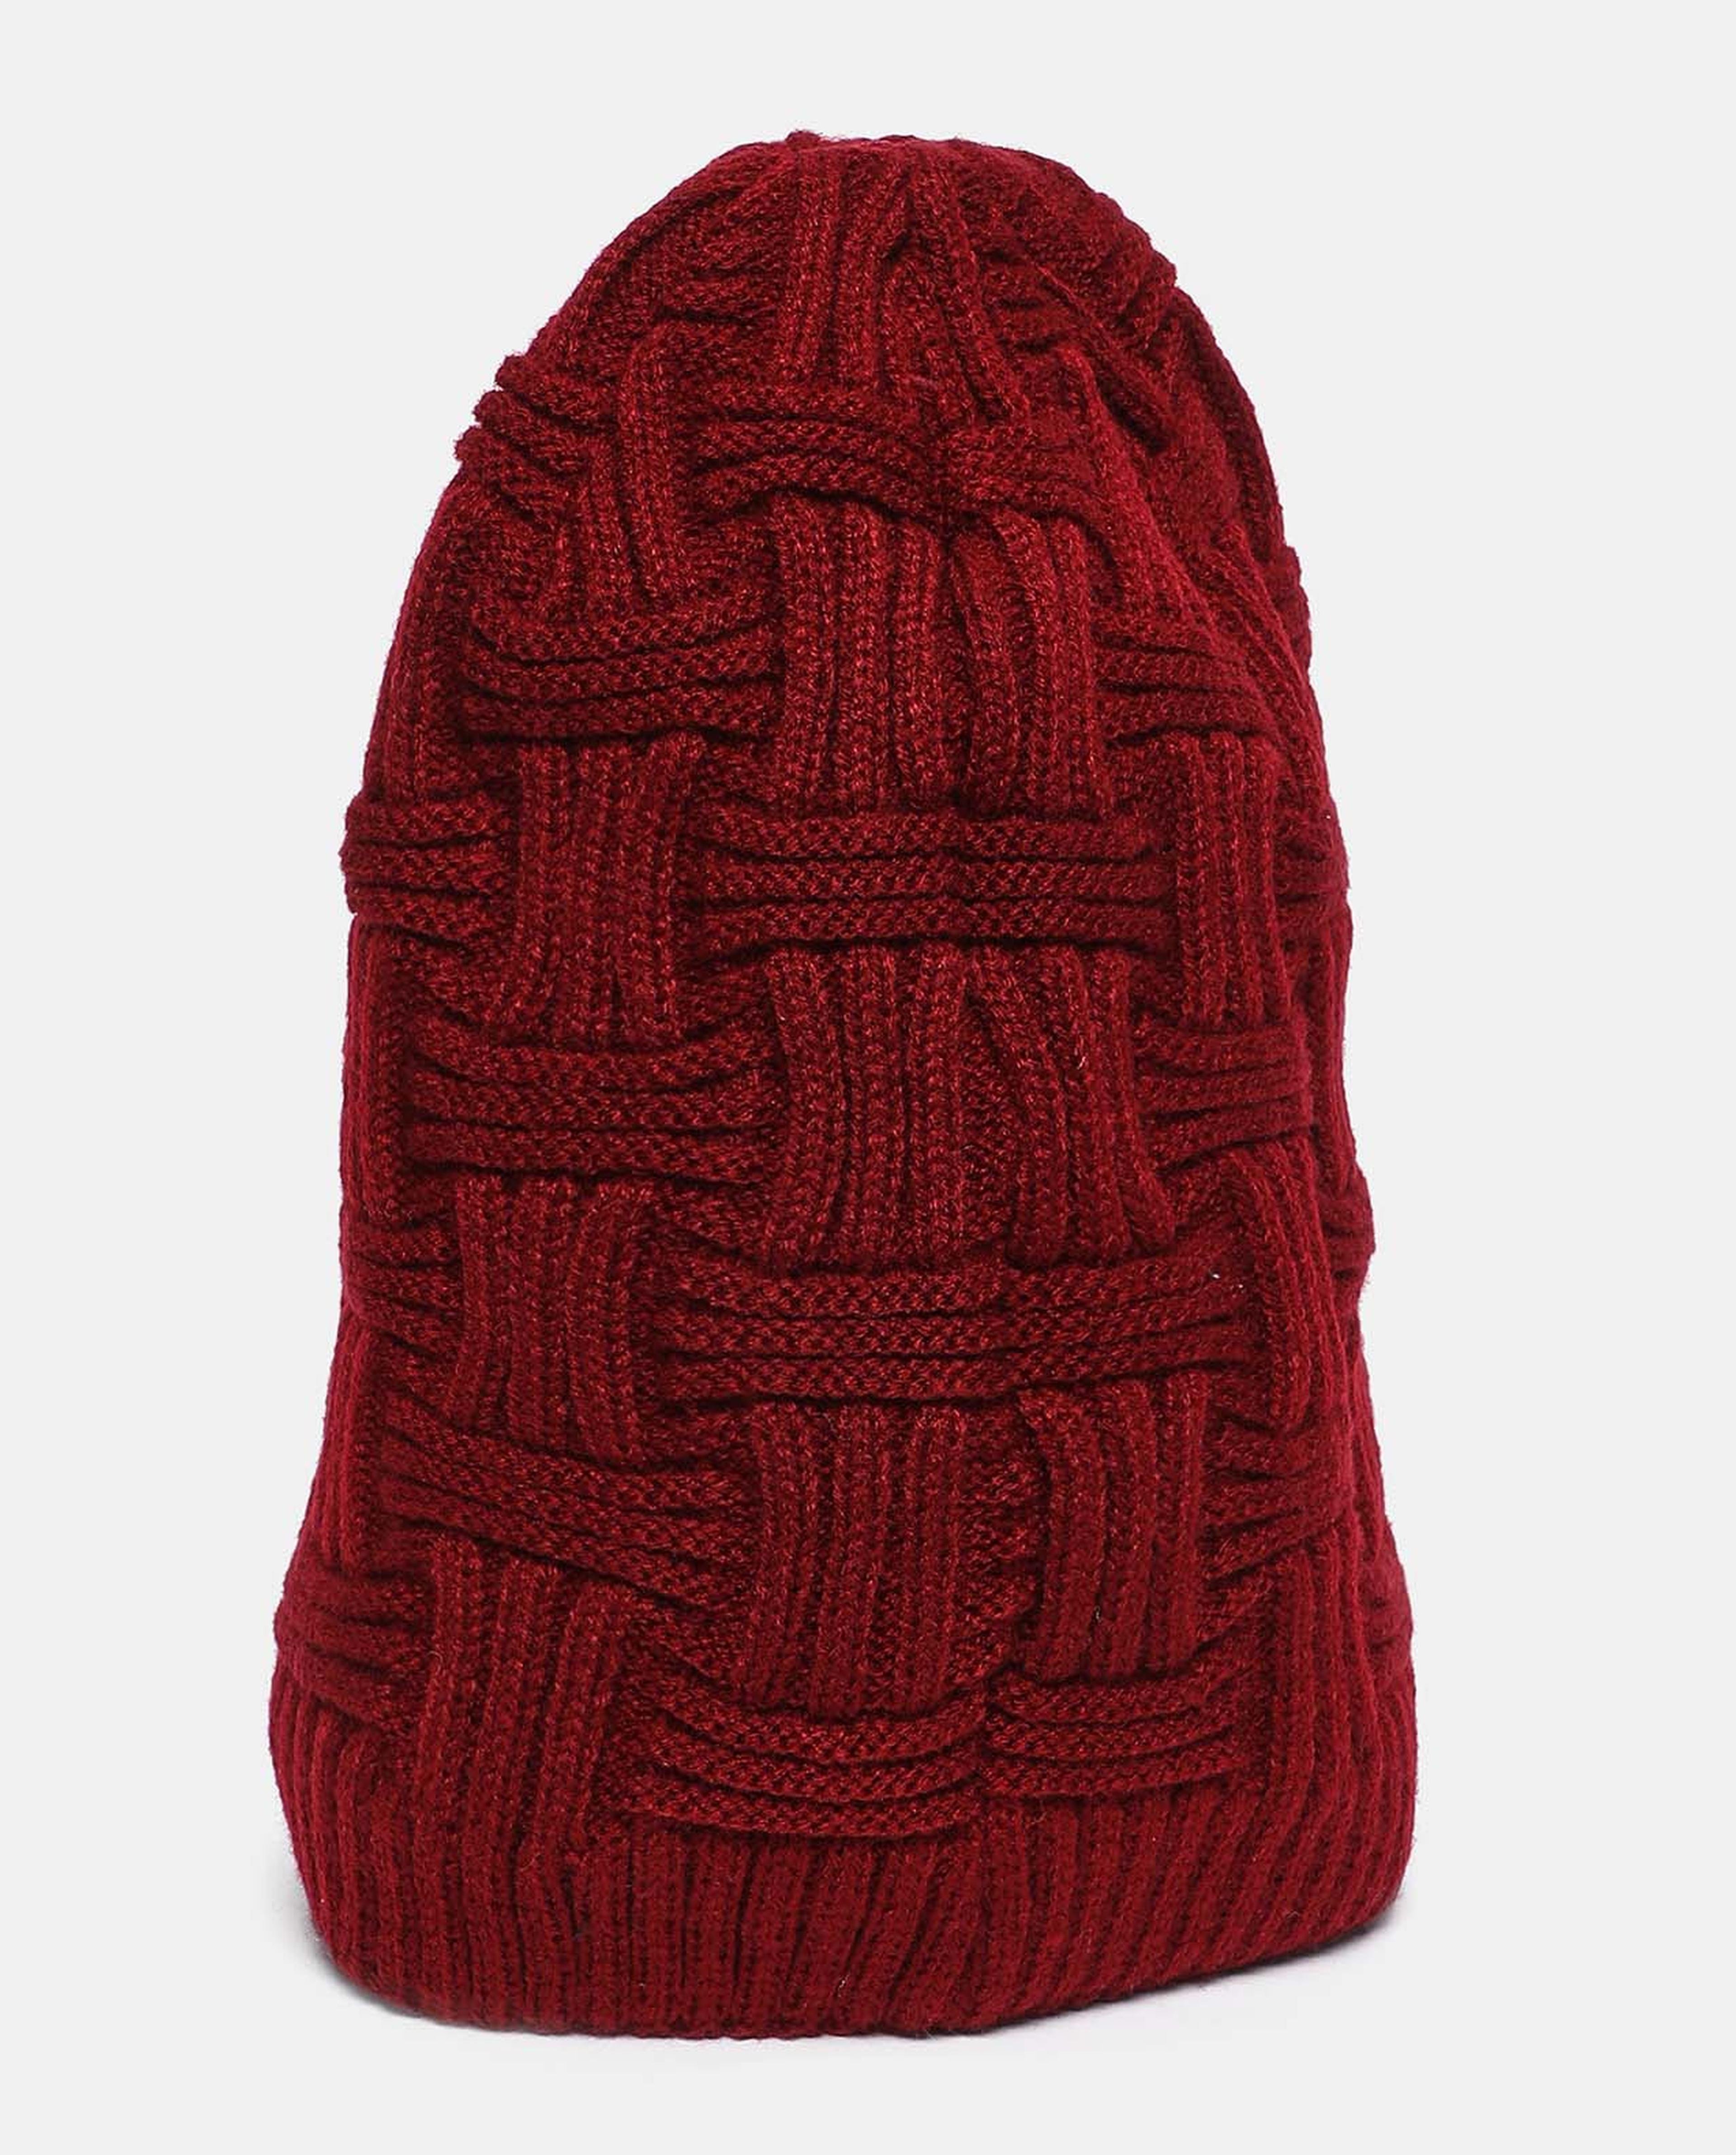 Self Design Knitted Beanie Cap